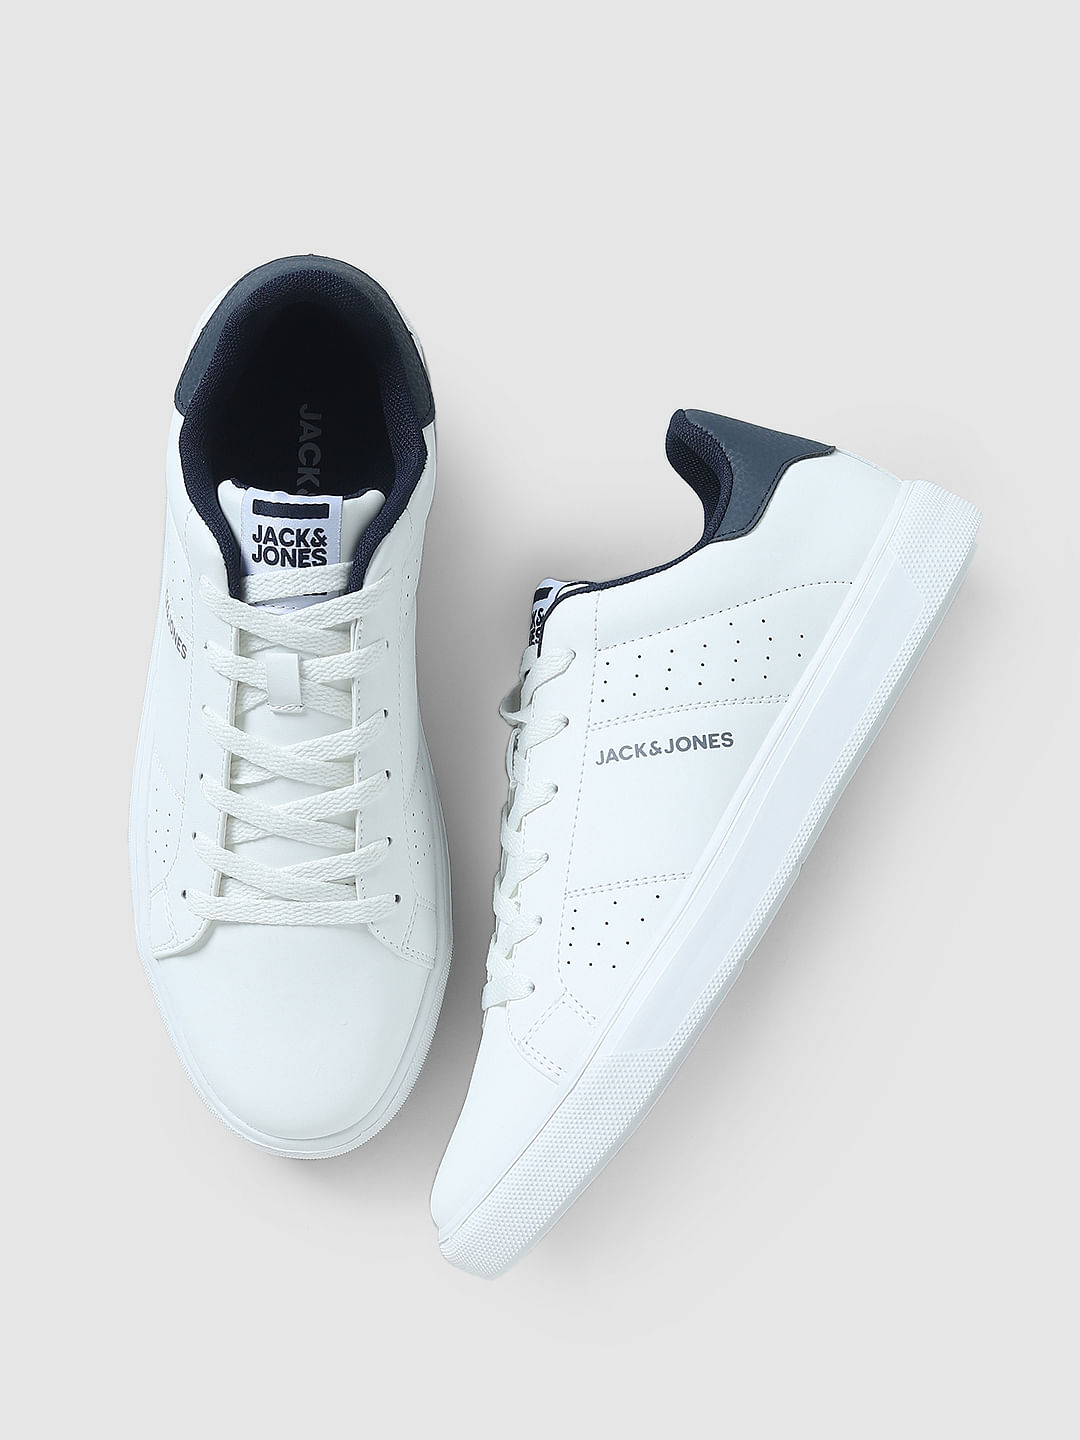 Louis Vuitton Skate Sneaker Grey Green Release Info | Hypebeast